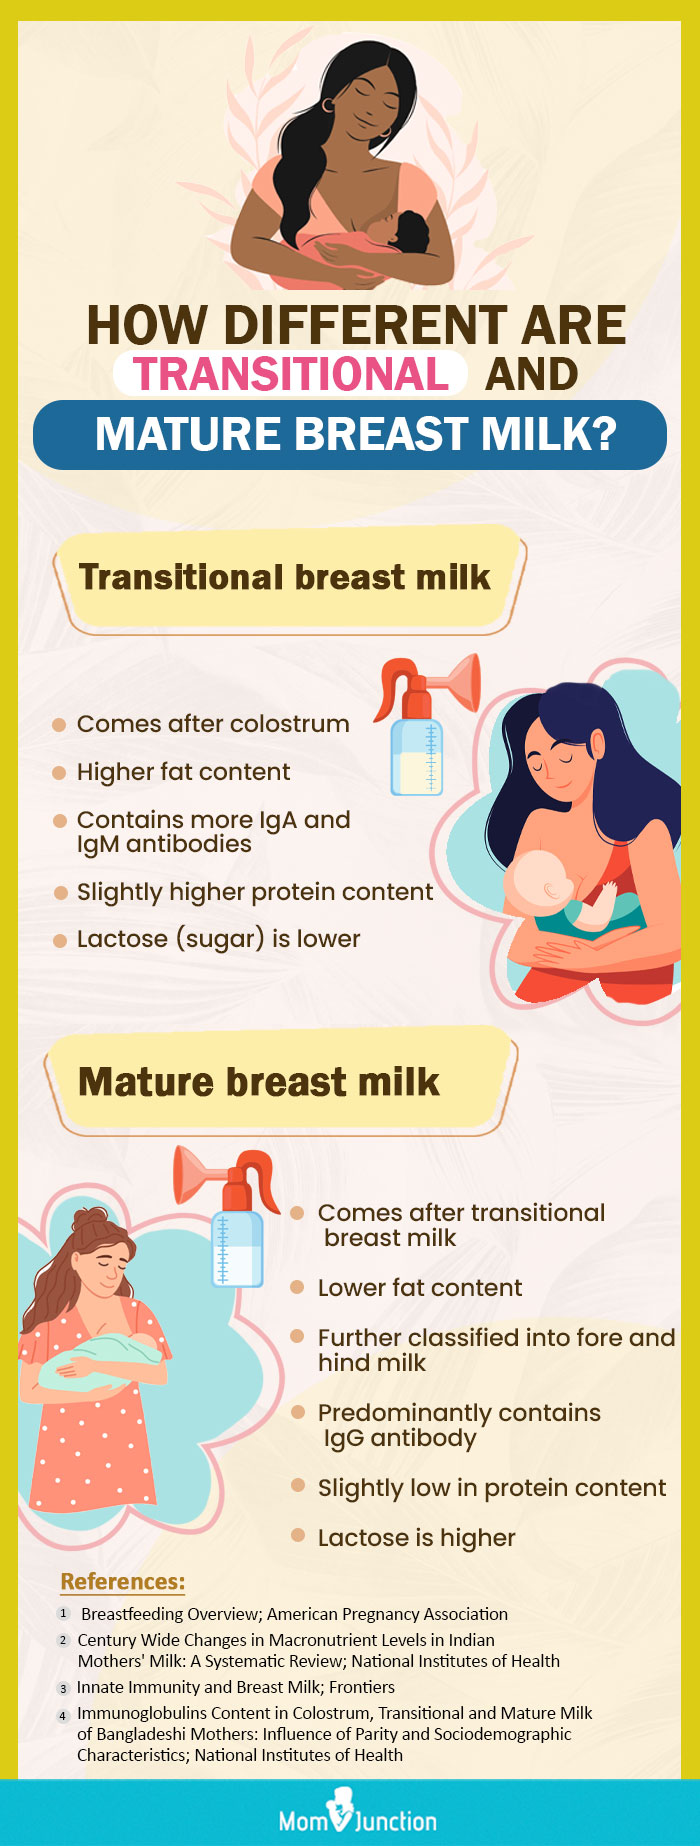 过渡期母乳和成熟期母乳有何不同(信息图)